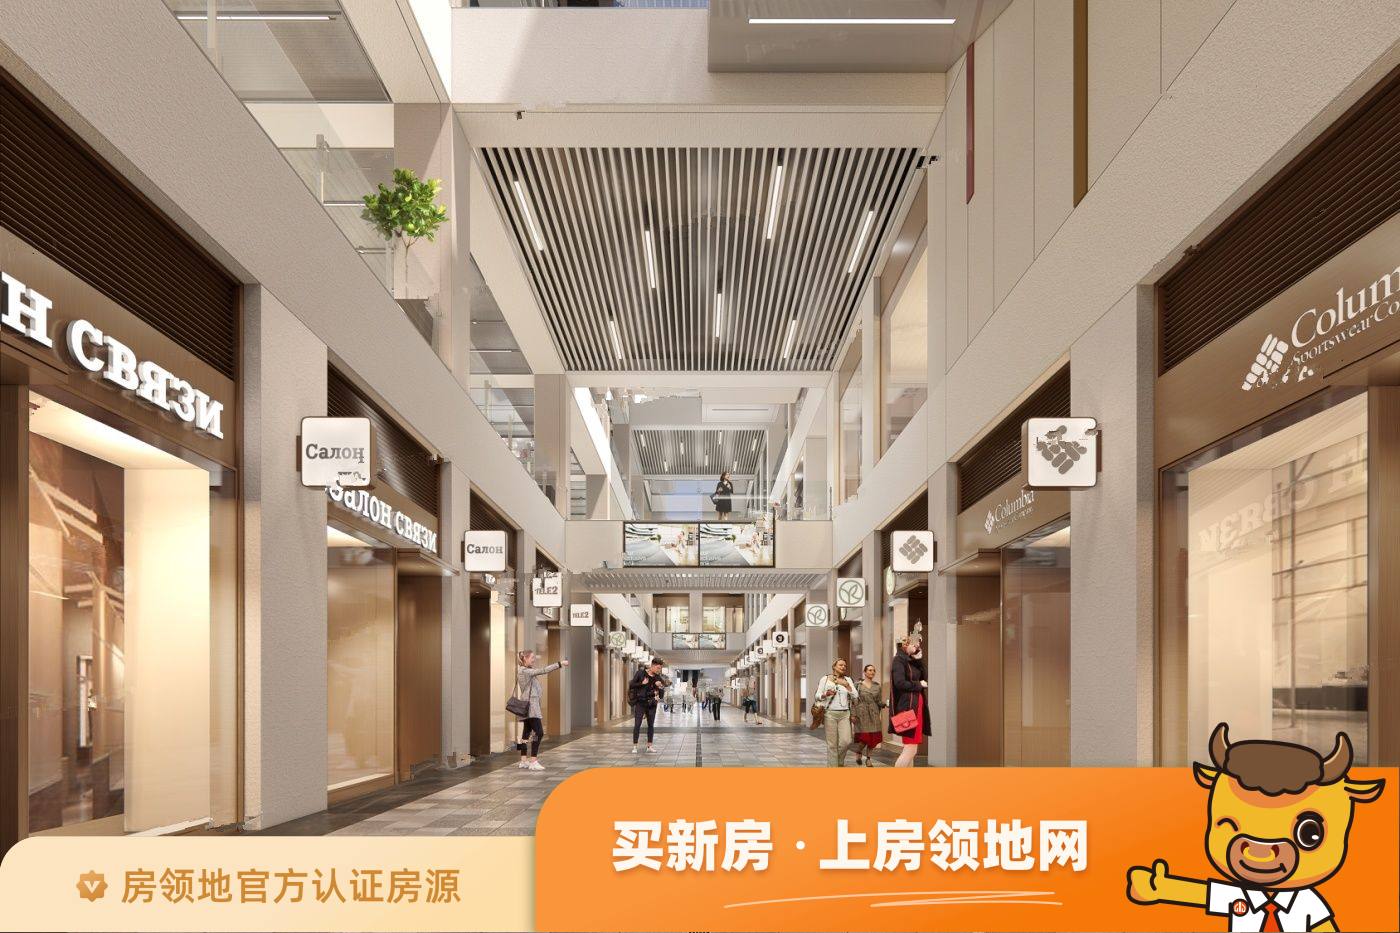 中国西部科技创新港学镇中心Ⅱ期效果图15